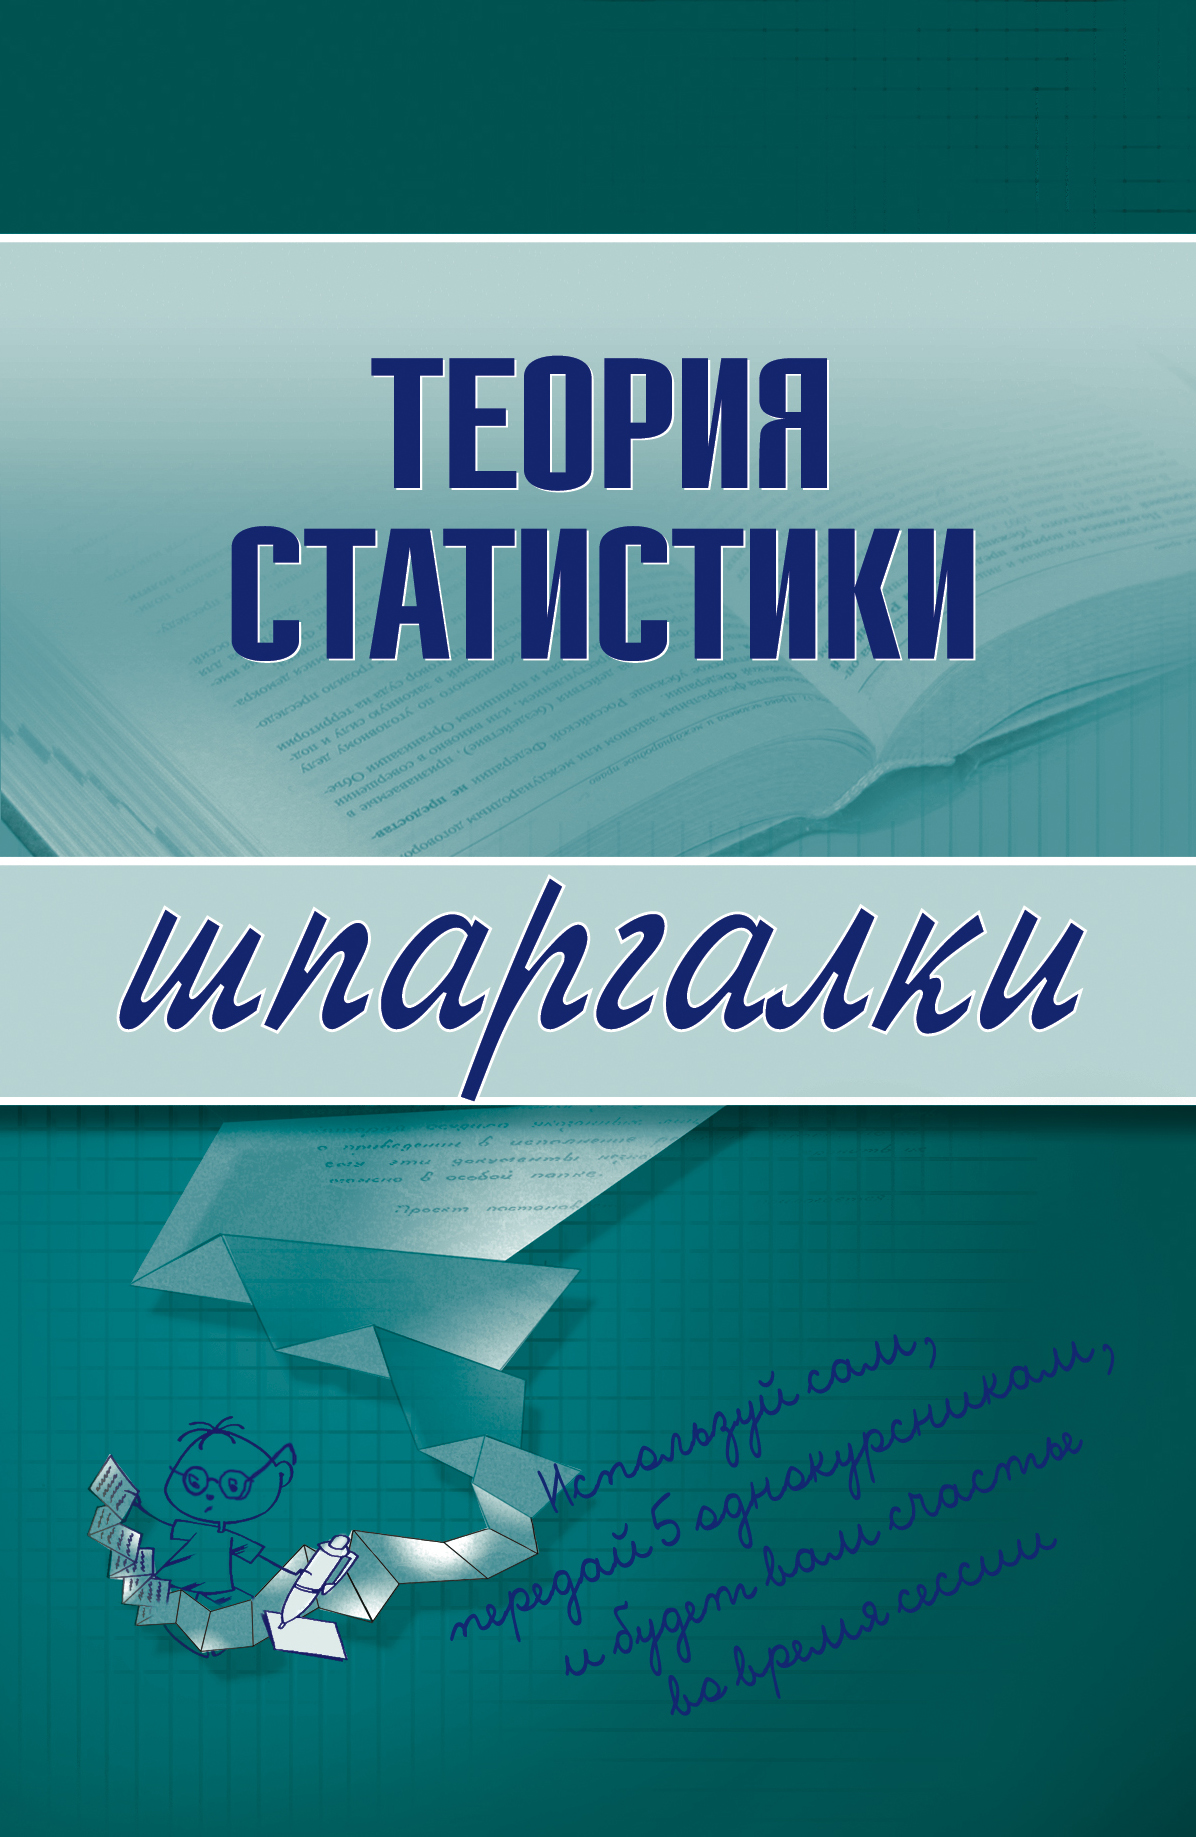 Книга Теория статистики из серии , созданная Инесса Бурханова, может относится к жанру Экономика. Стоимость электронной книги Теория статистики с идентификатором 179779 составляет 44.95 руб.